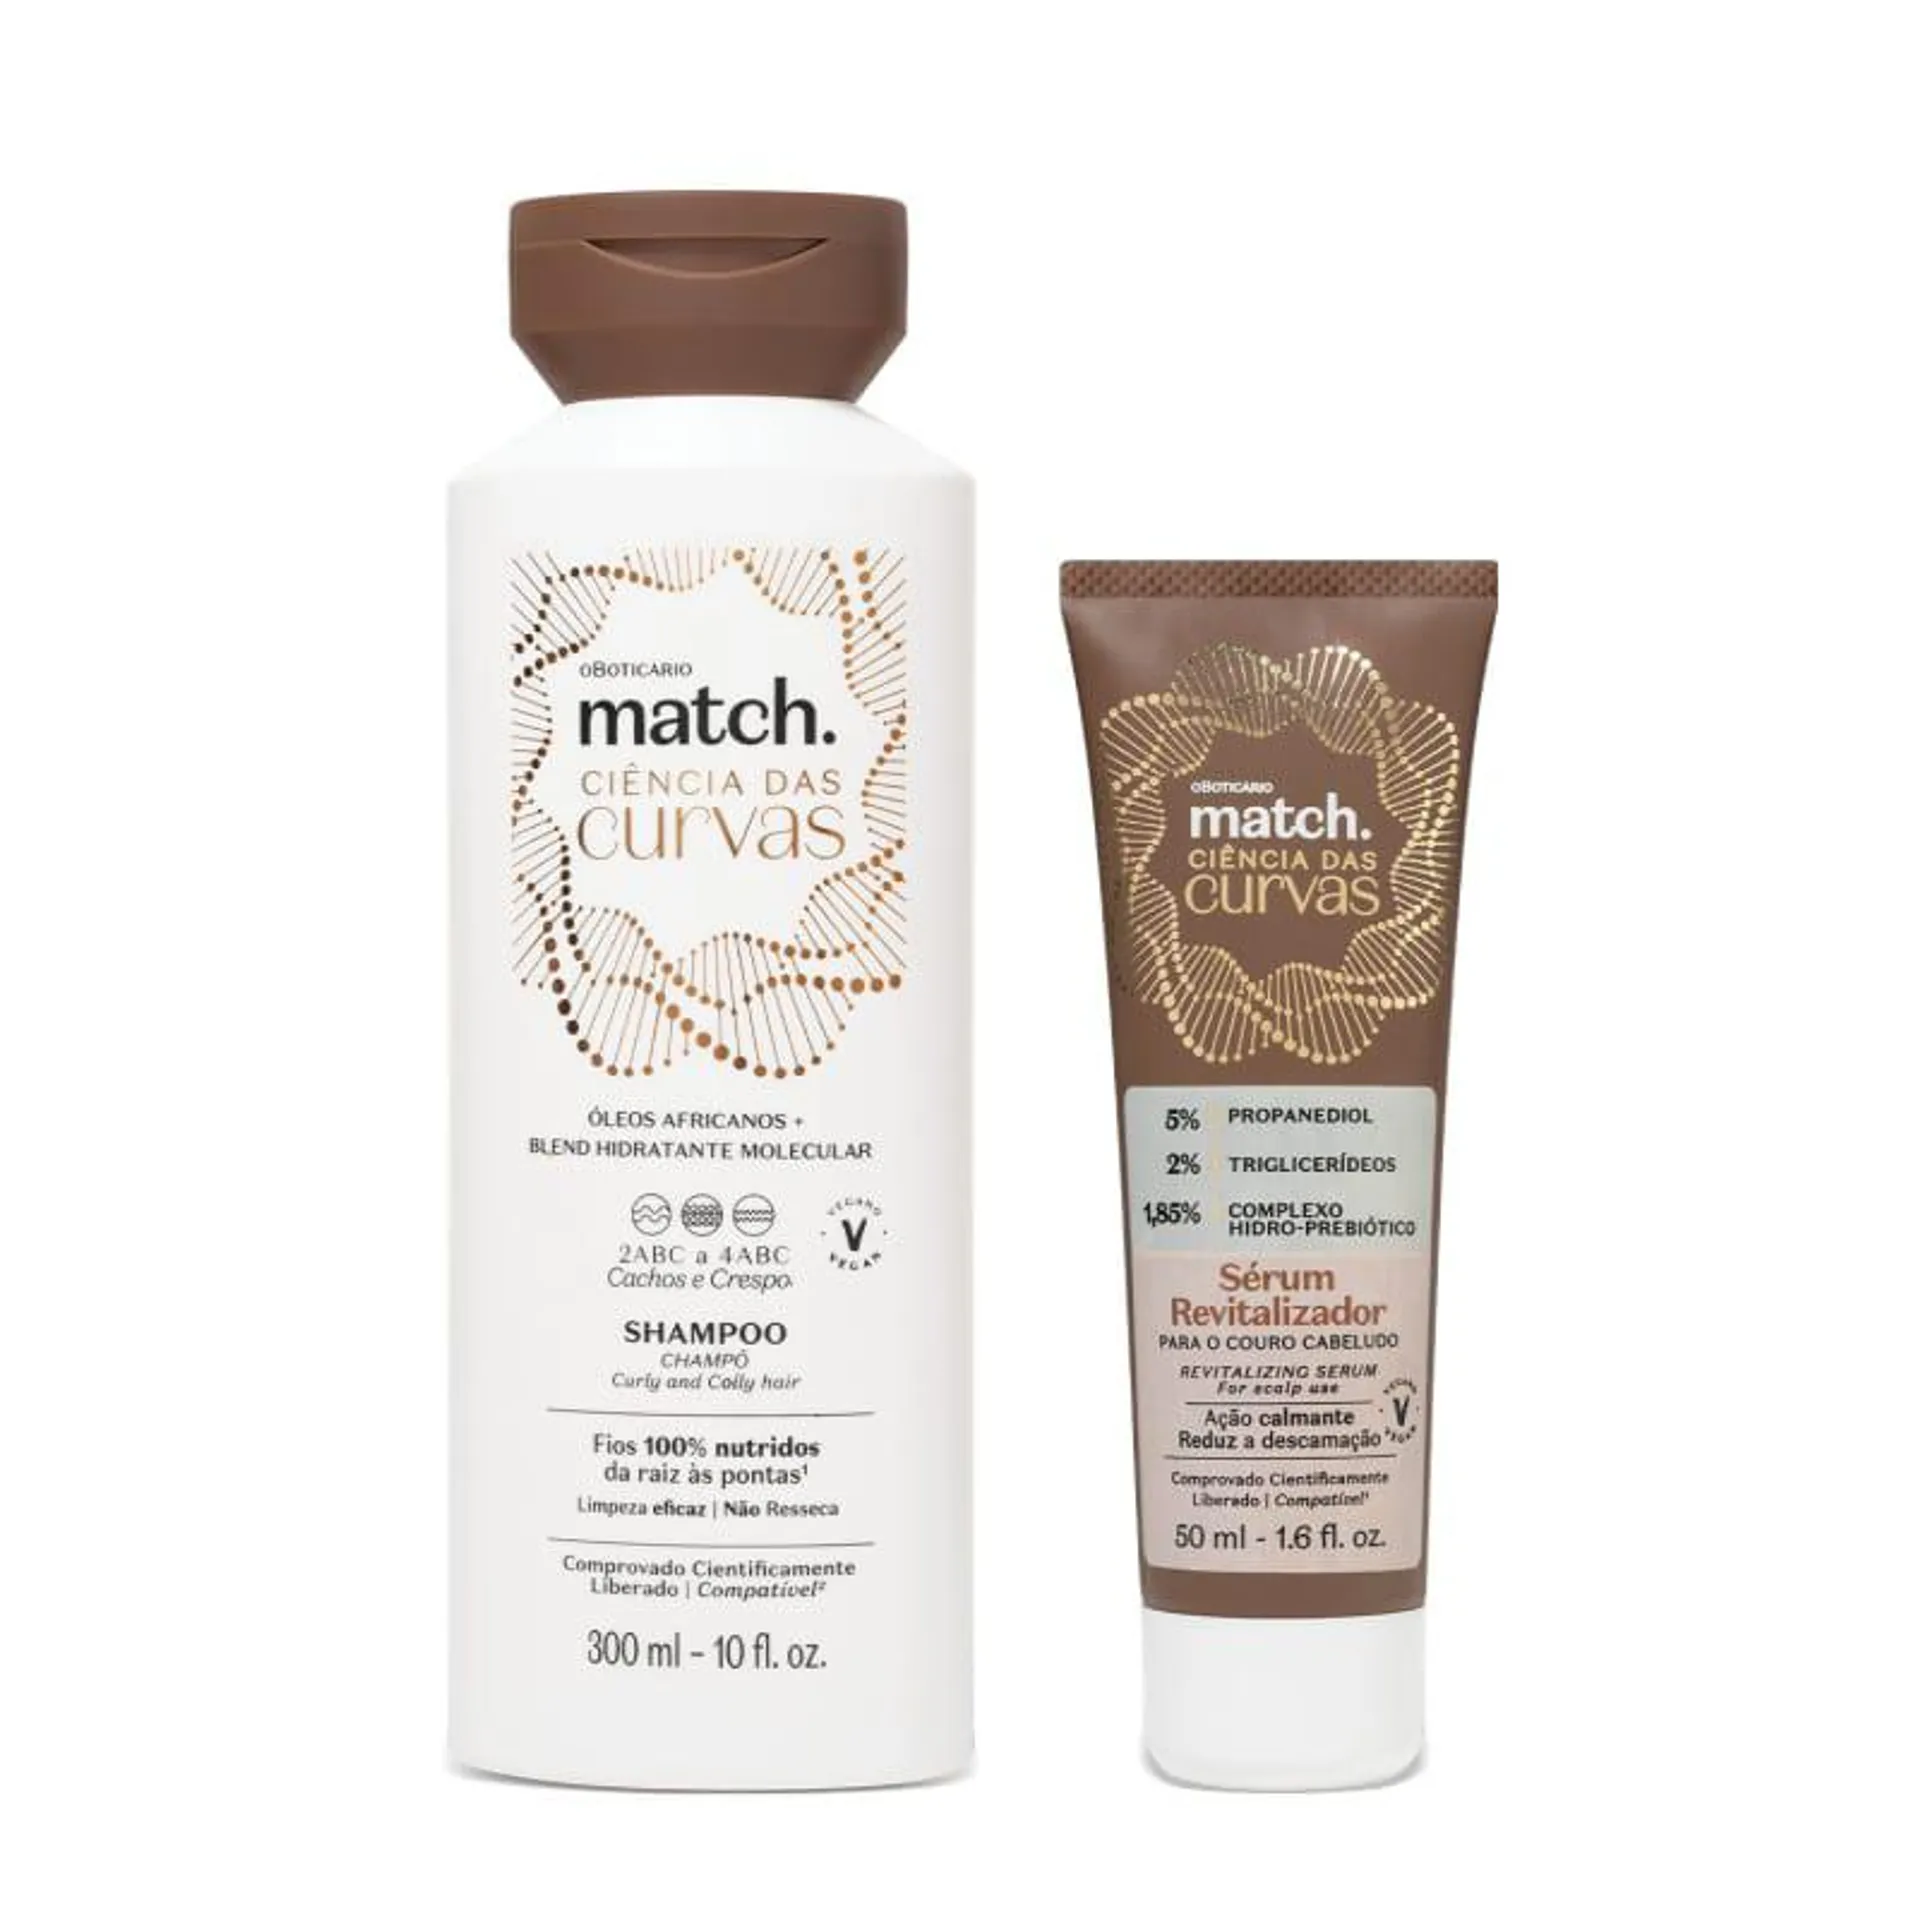 Combo Match Ciência das Curvas: Shampoo 300ml + Sérum Revitalizador Para o Couro Cabeludo 50ml